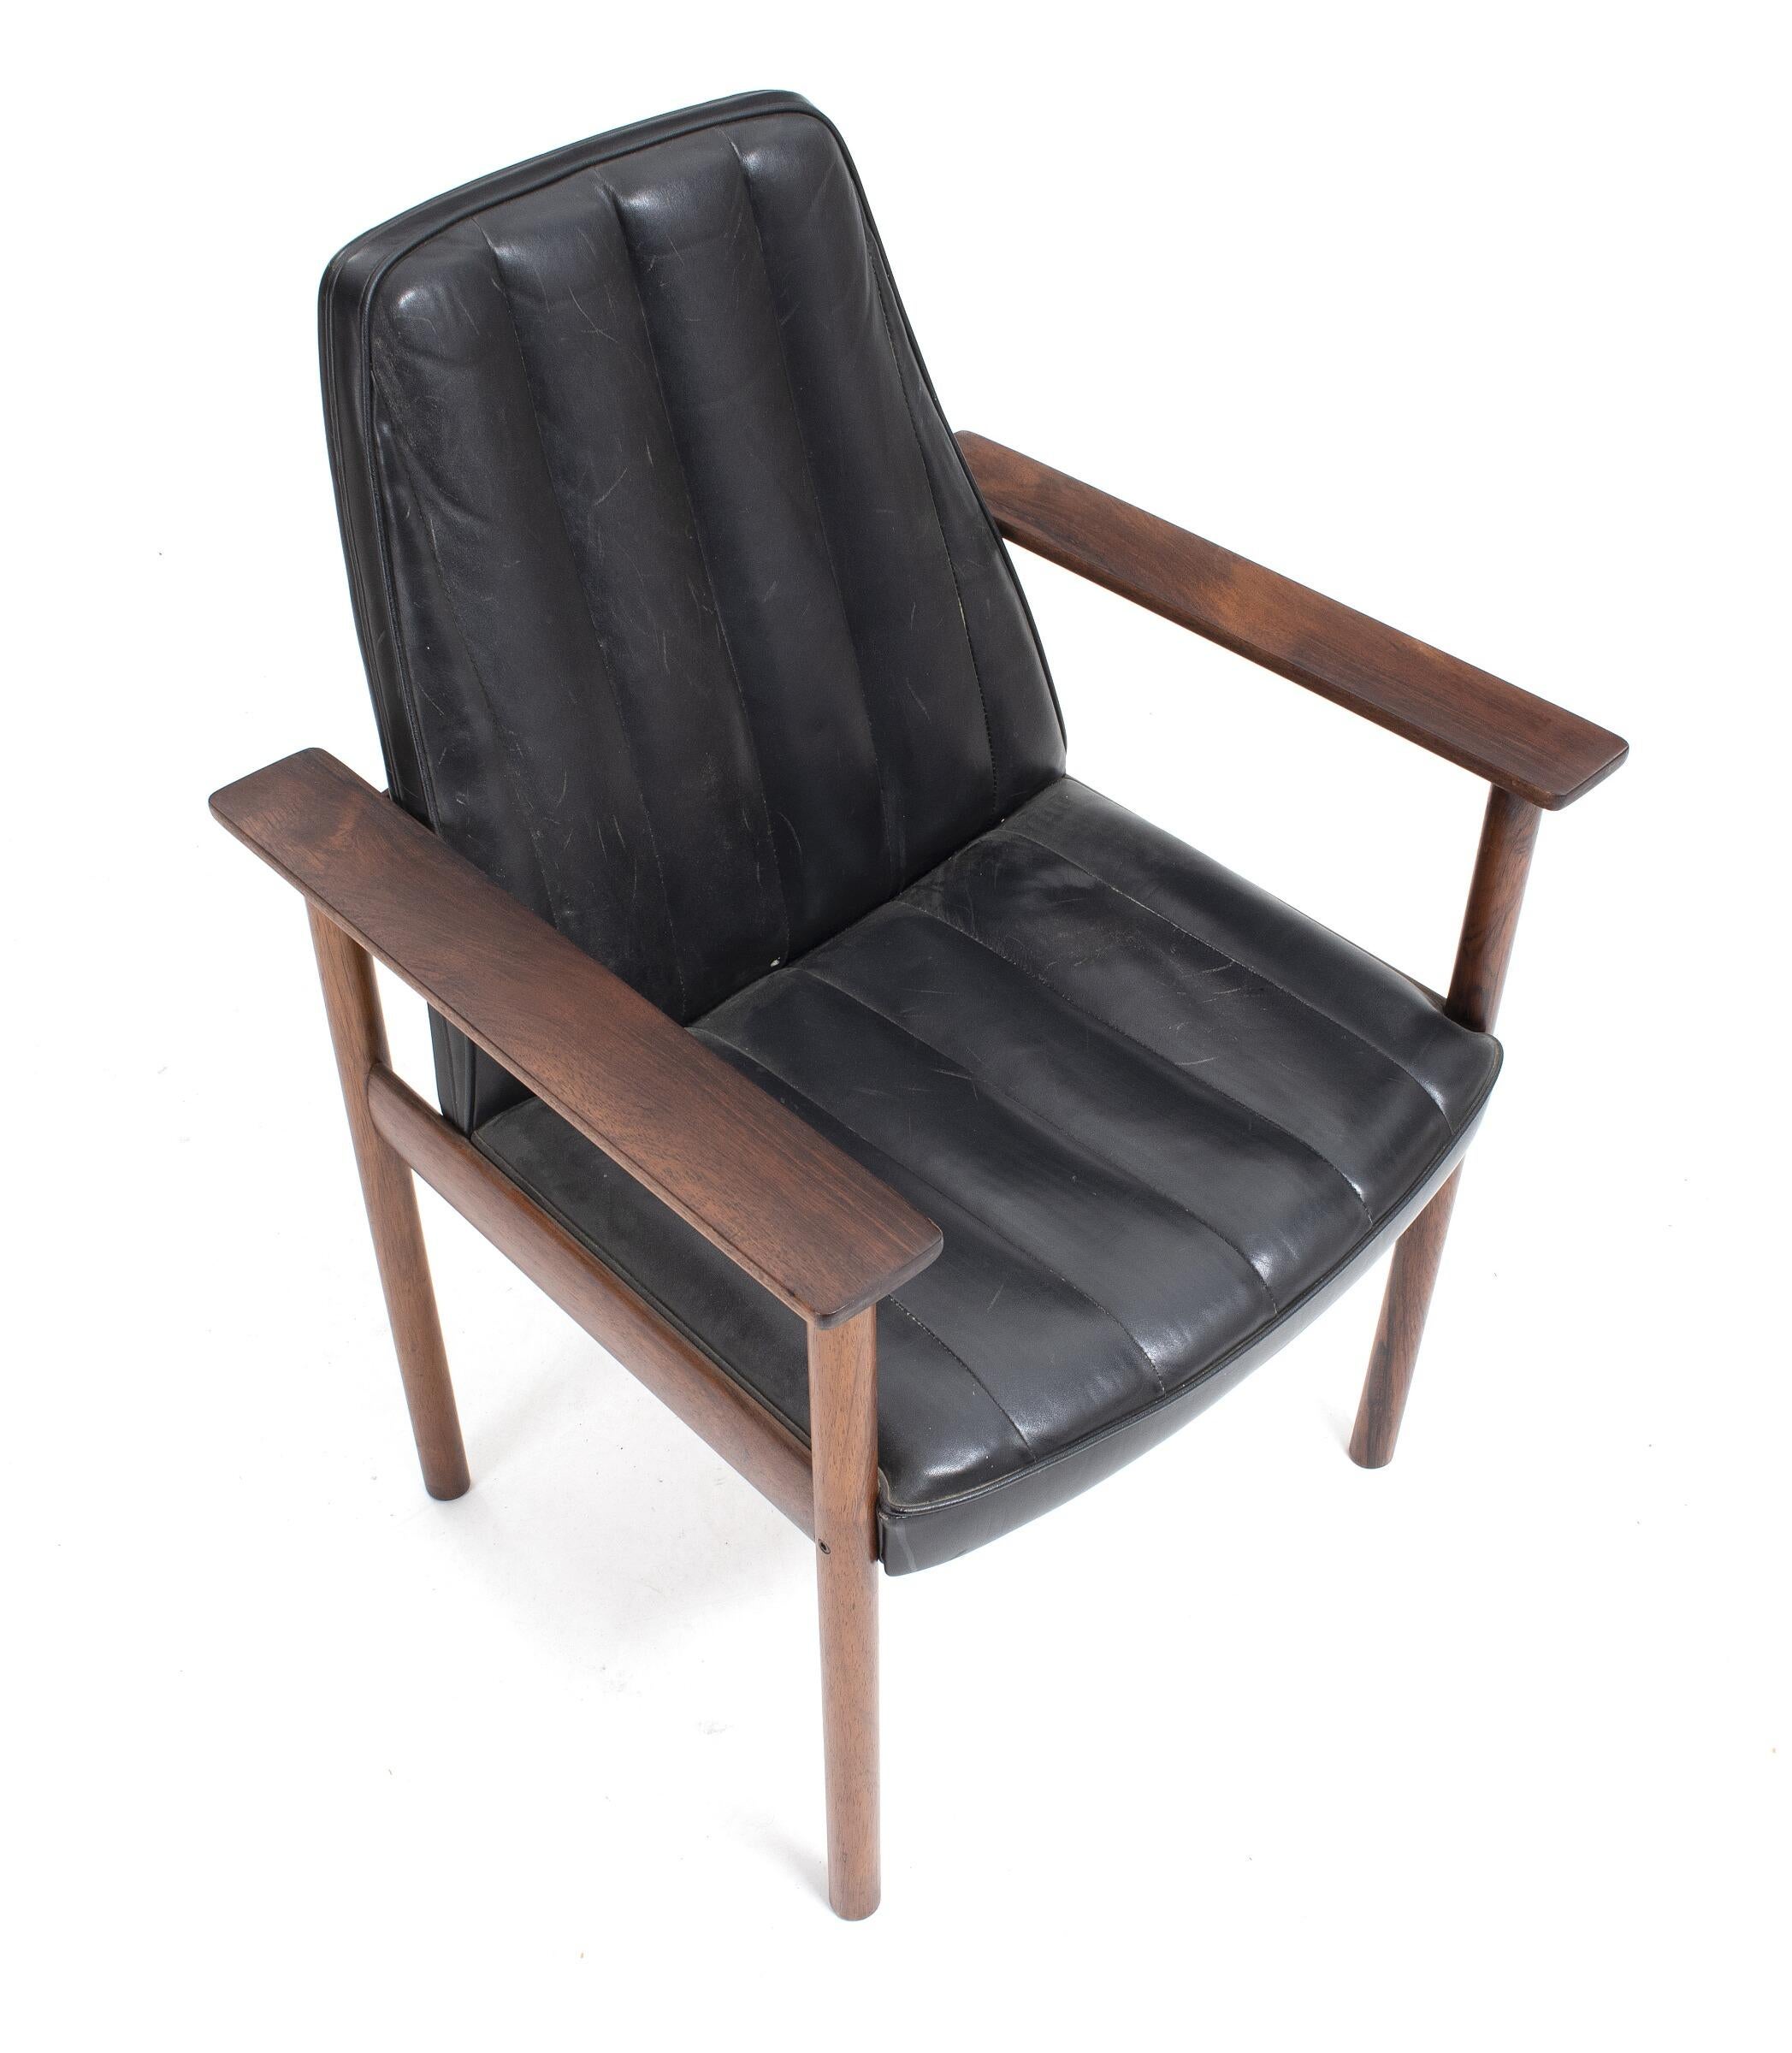 Hartholzrahmen und Ledersitz, entworfen von Sven Ivar Dysthe in Norwegen für Dokka Mobler in den 1960er Jahren.
Der Stuhl ist in sehr gutem Originalzustand mit leichter Patina an Stahl- und Holzteilen.
Abmessungen: 81 H x 65 B x 58 T cm.